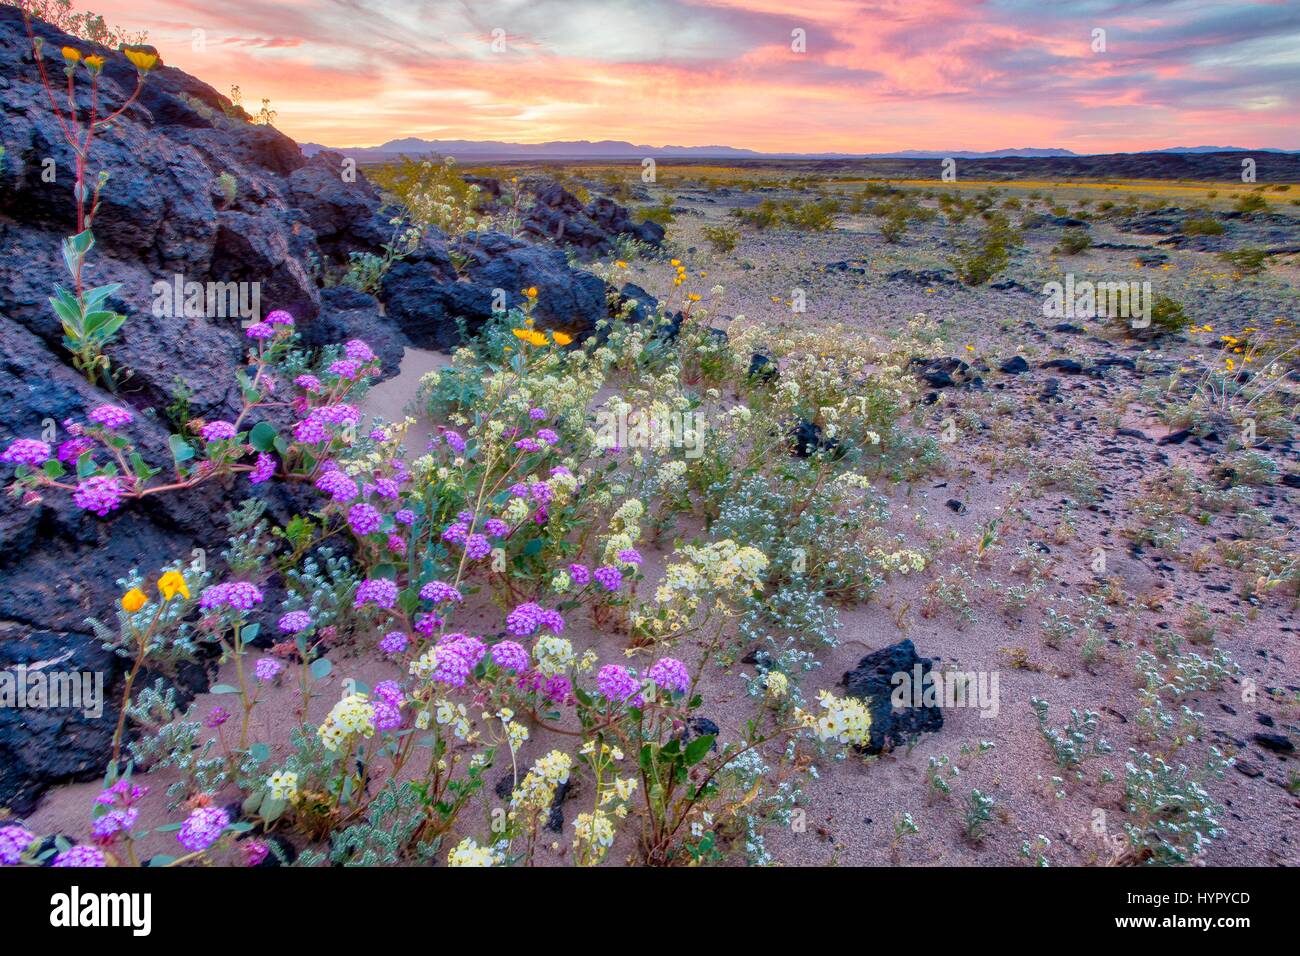 Wilde Blumen Teppich die Wüste am Amboy Krater im Mojave Trails National Monument 15. März 2017 in der Nähe von Amboy, Kalifornien. Das Mojave Trails National Monument erstreckt sich über 1,6 Millionen Hektar und umfasst schroffe Bergketten, alte Lavaströme und fossilen Betten und spektakulären Sanddünen. Stockfoto